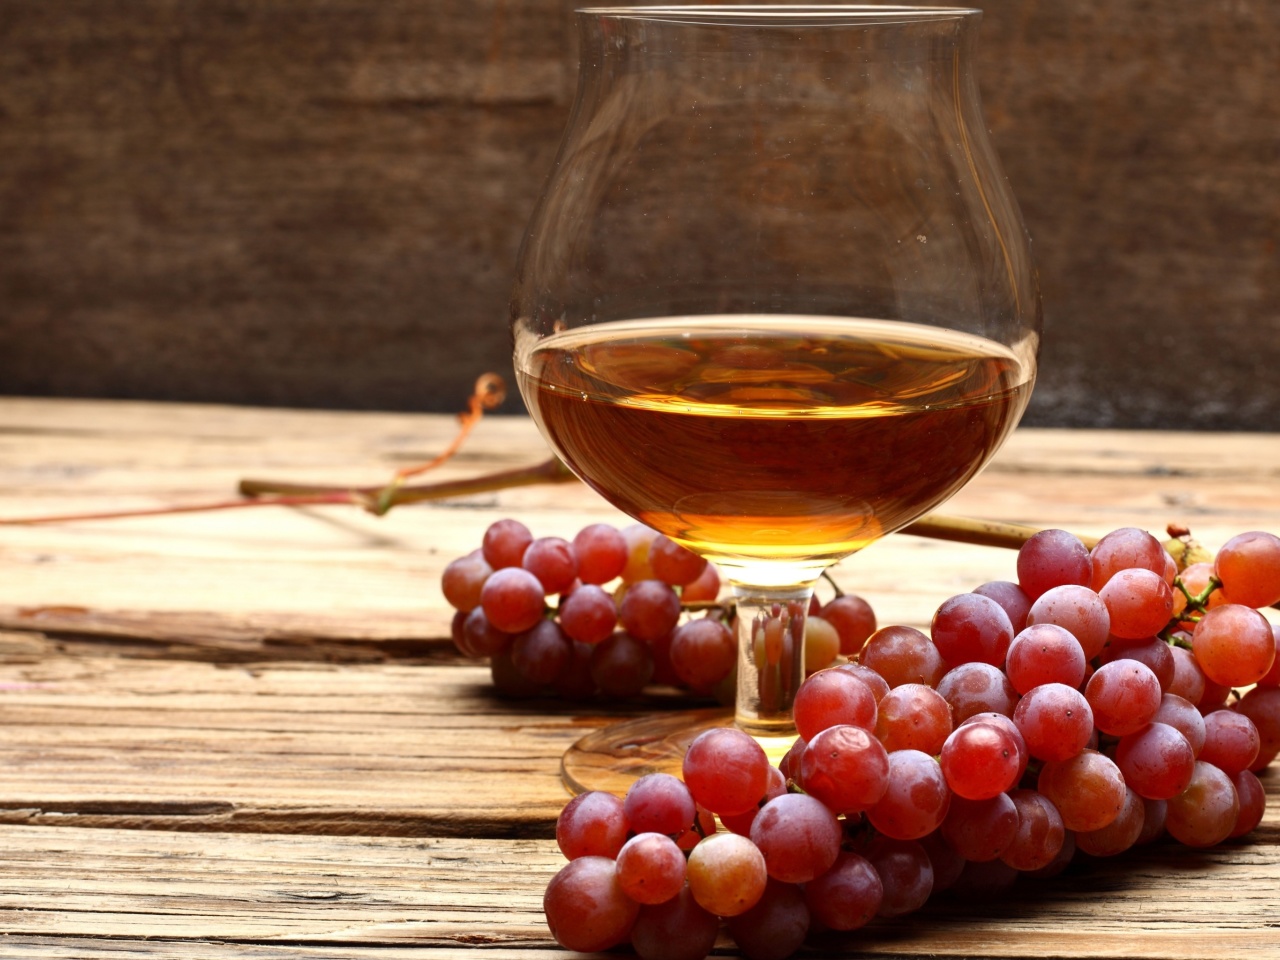 Cognac and grapes wallpaper 1280x960